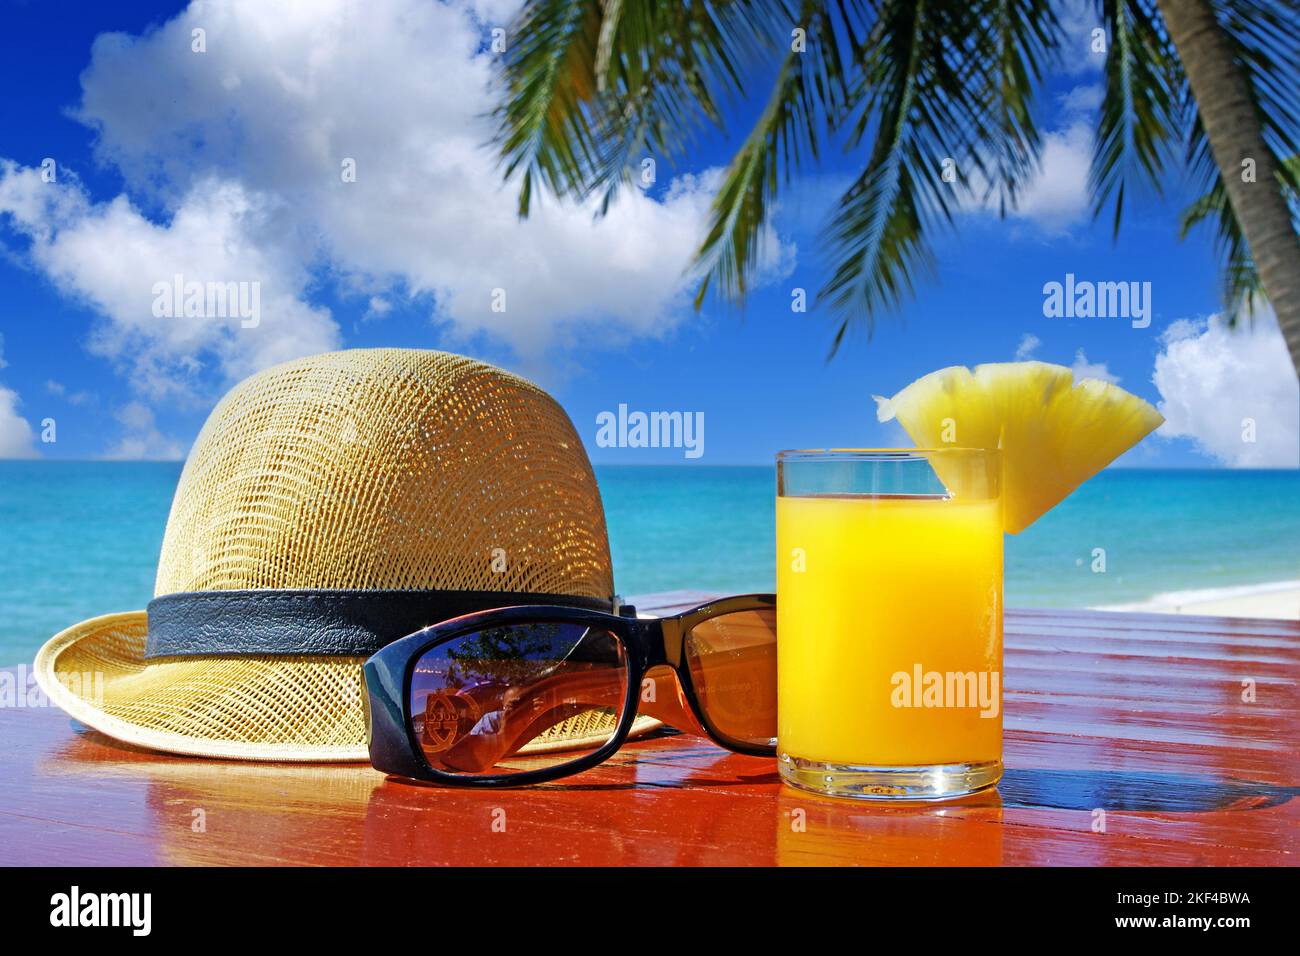 Sonnenhut mit Sonnenbrille und Fruchtsaft unter Palmen am Strand in Thailand, Stilllife, Urlaubsfeeling, Stock Photo